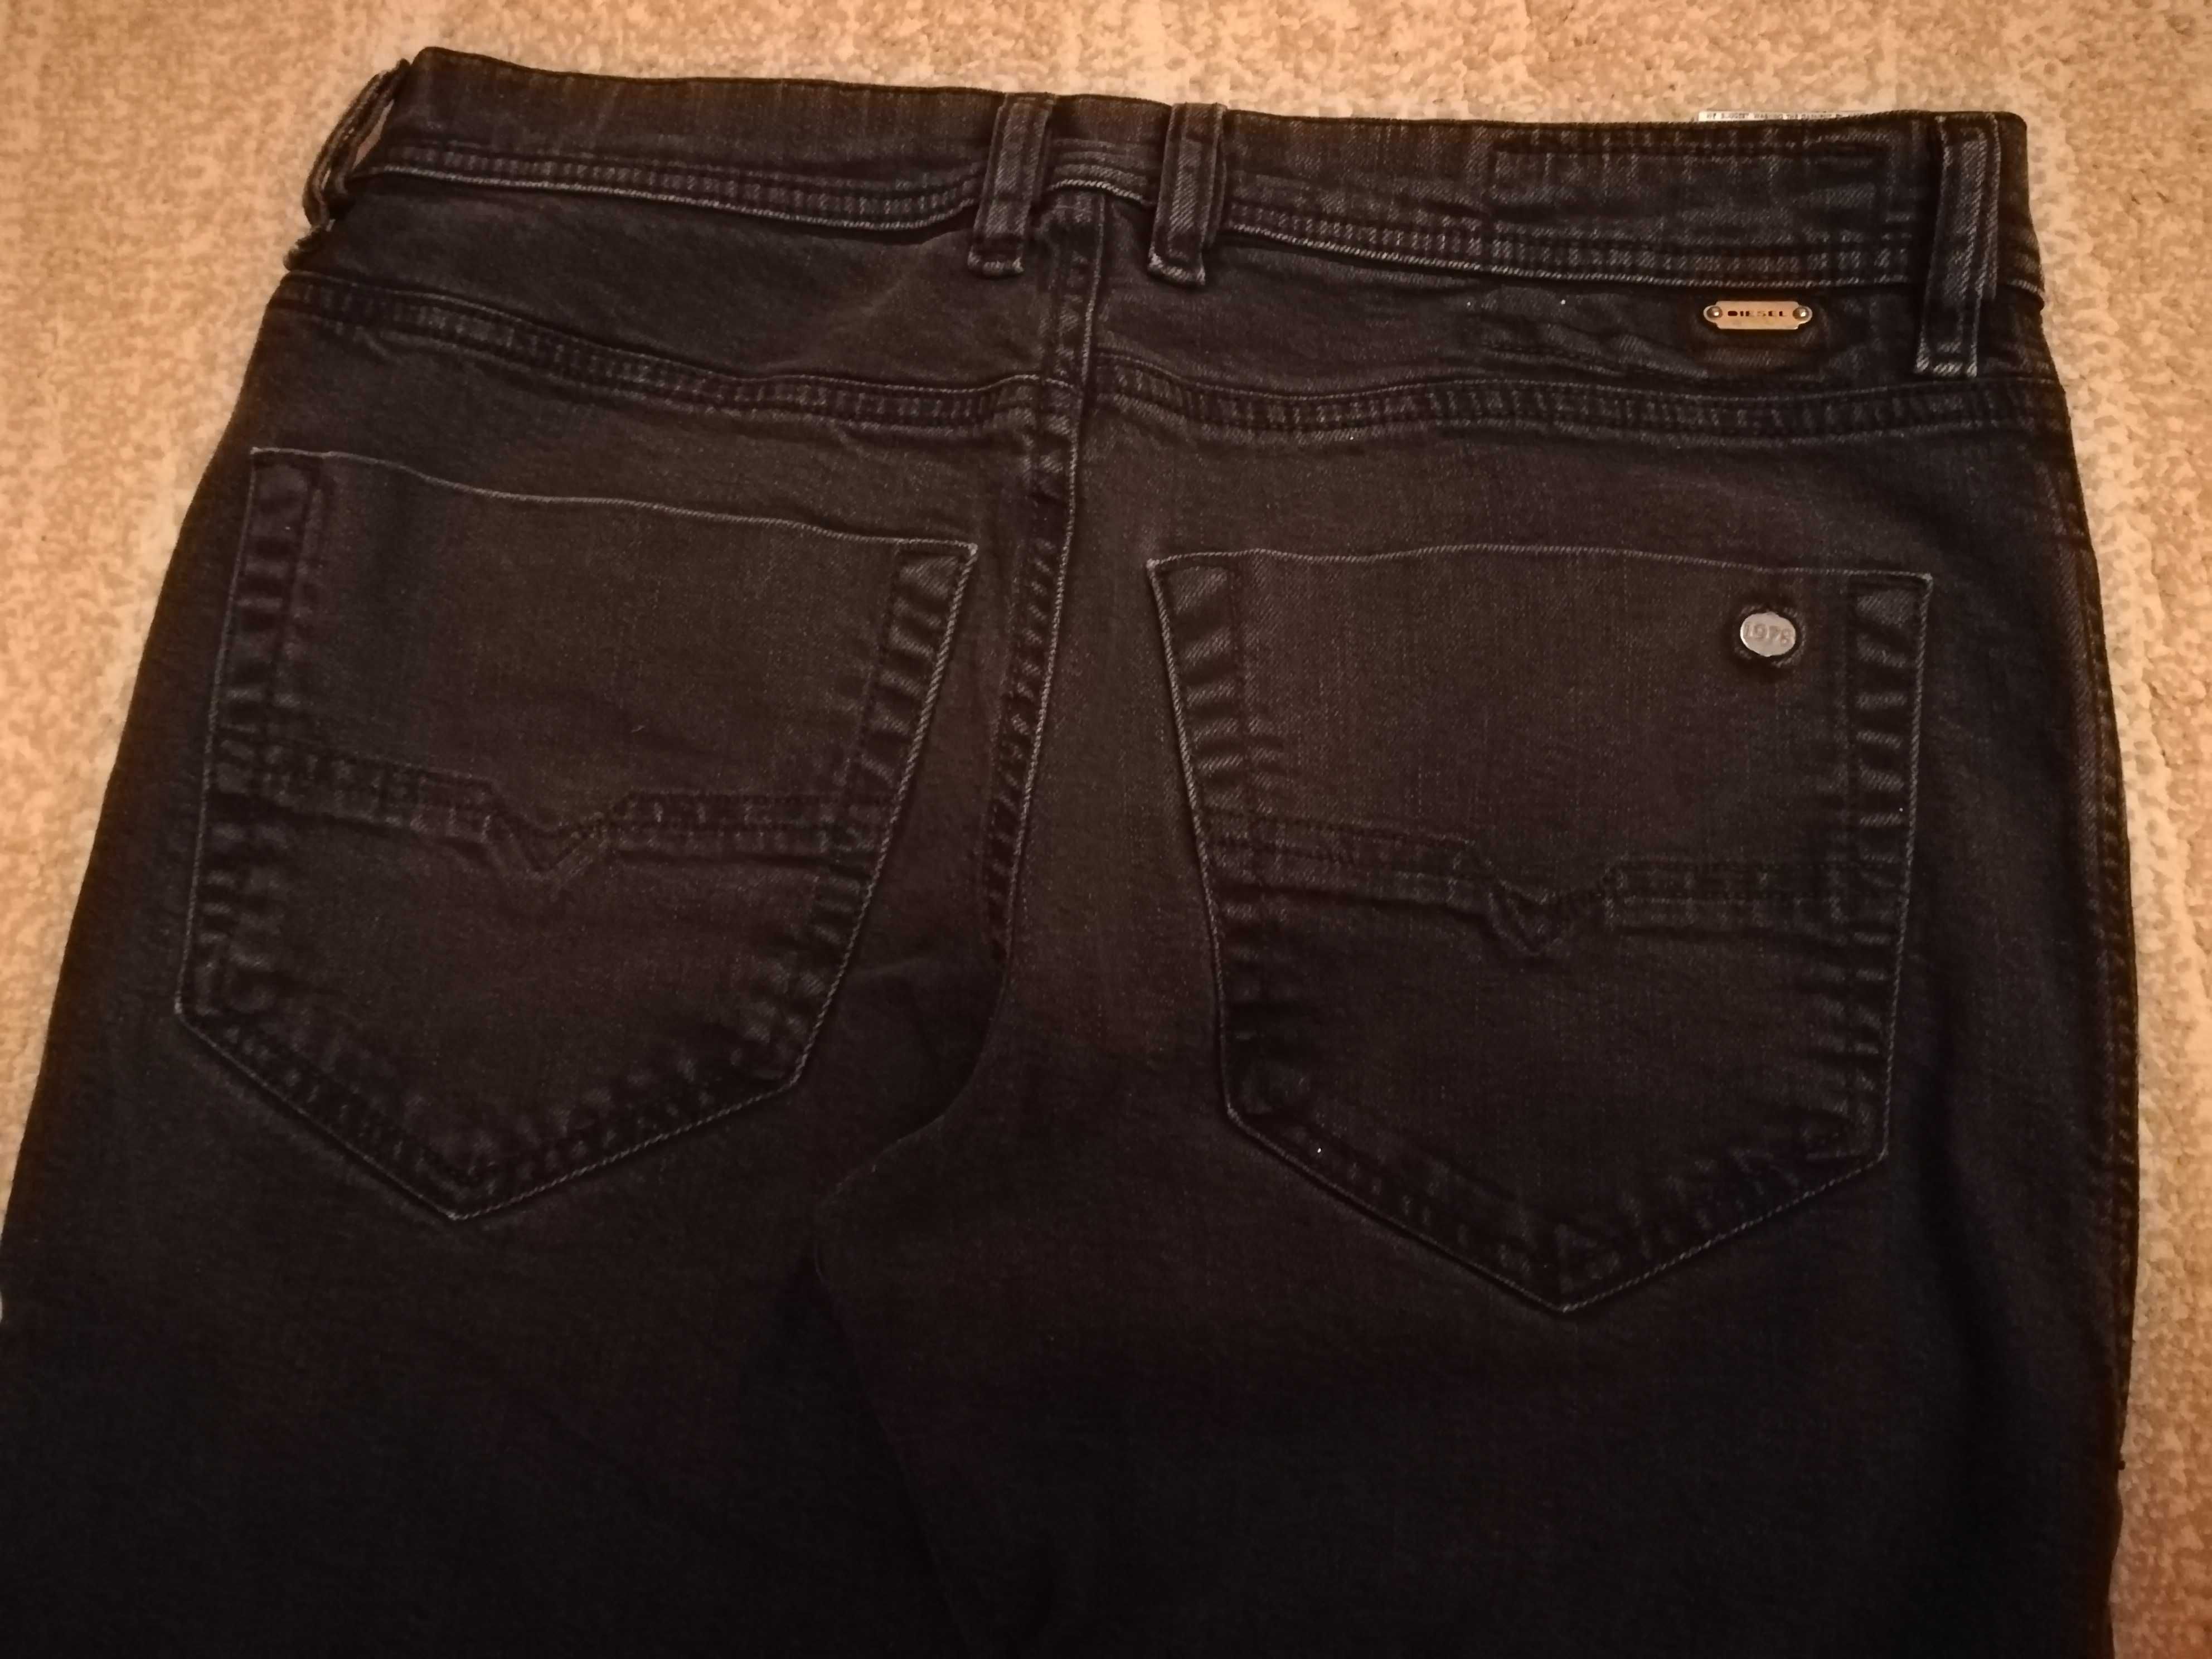 Spodnie męskie jeansowe firmy Diesel